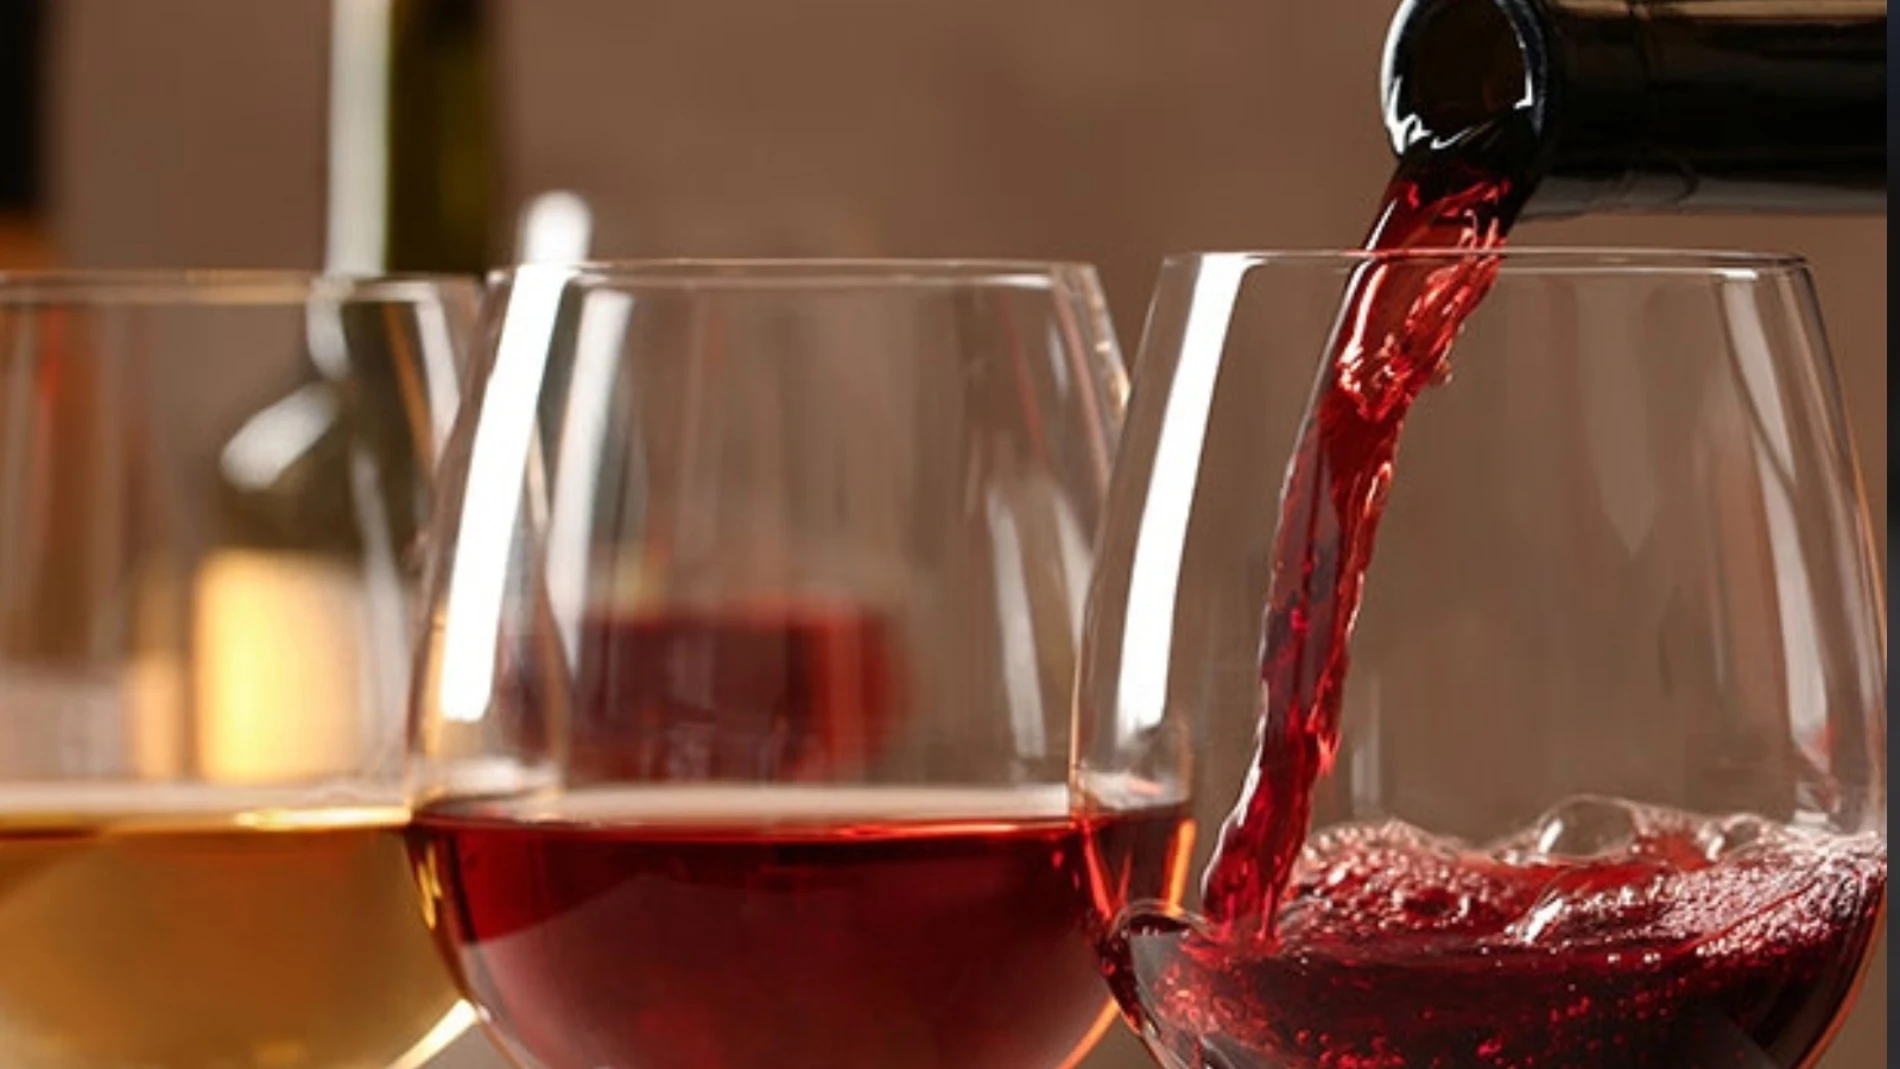 Economía.- Tarima Hill, único vino español entre los 10 mejores  calidad-precio del mundo, según 'Wine Spectator' - Tapas